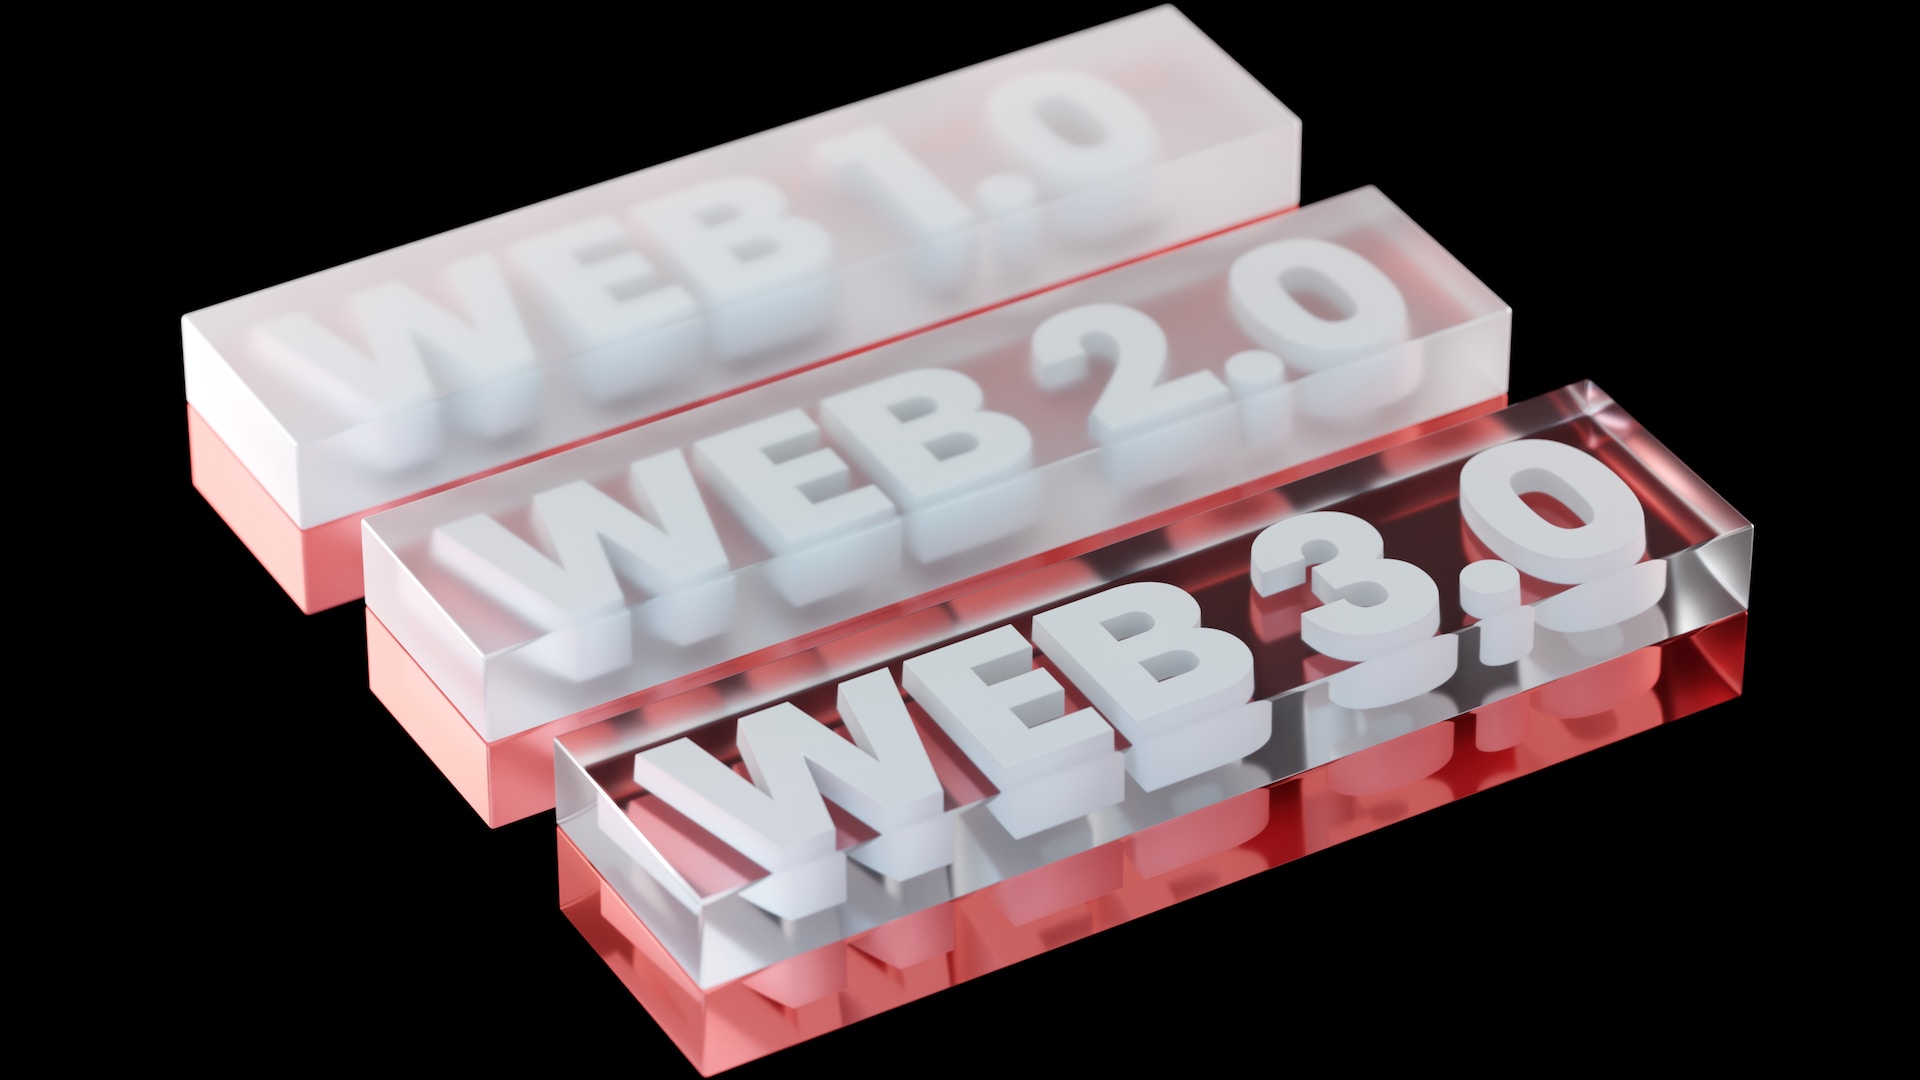 web1 to web2